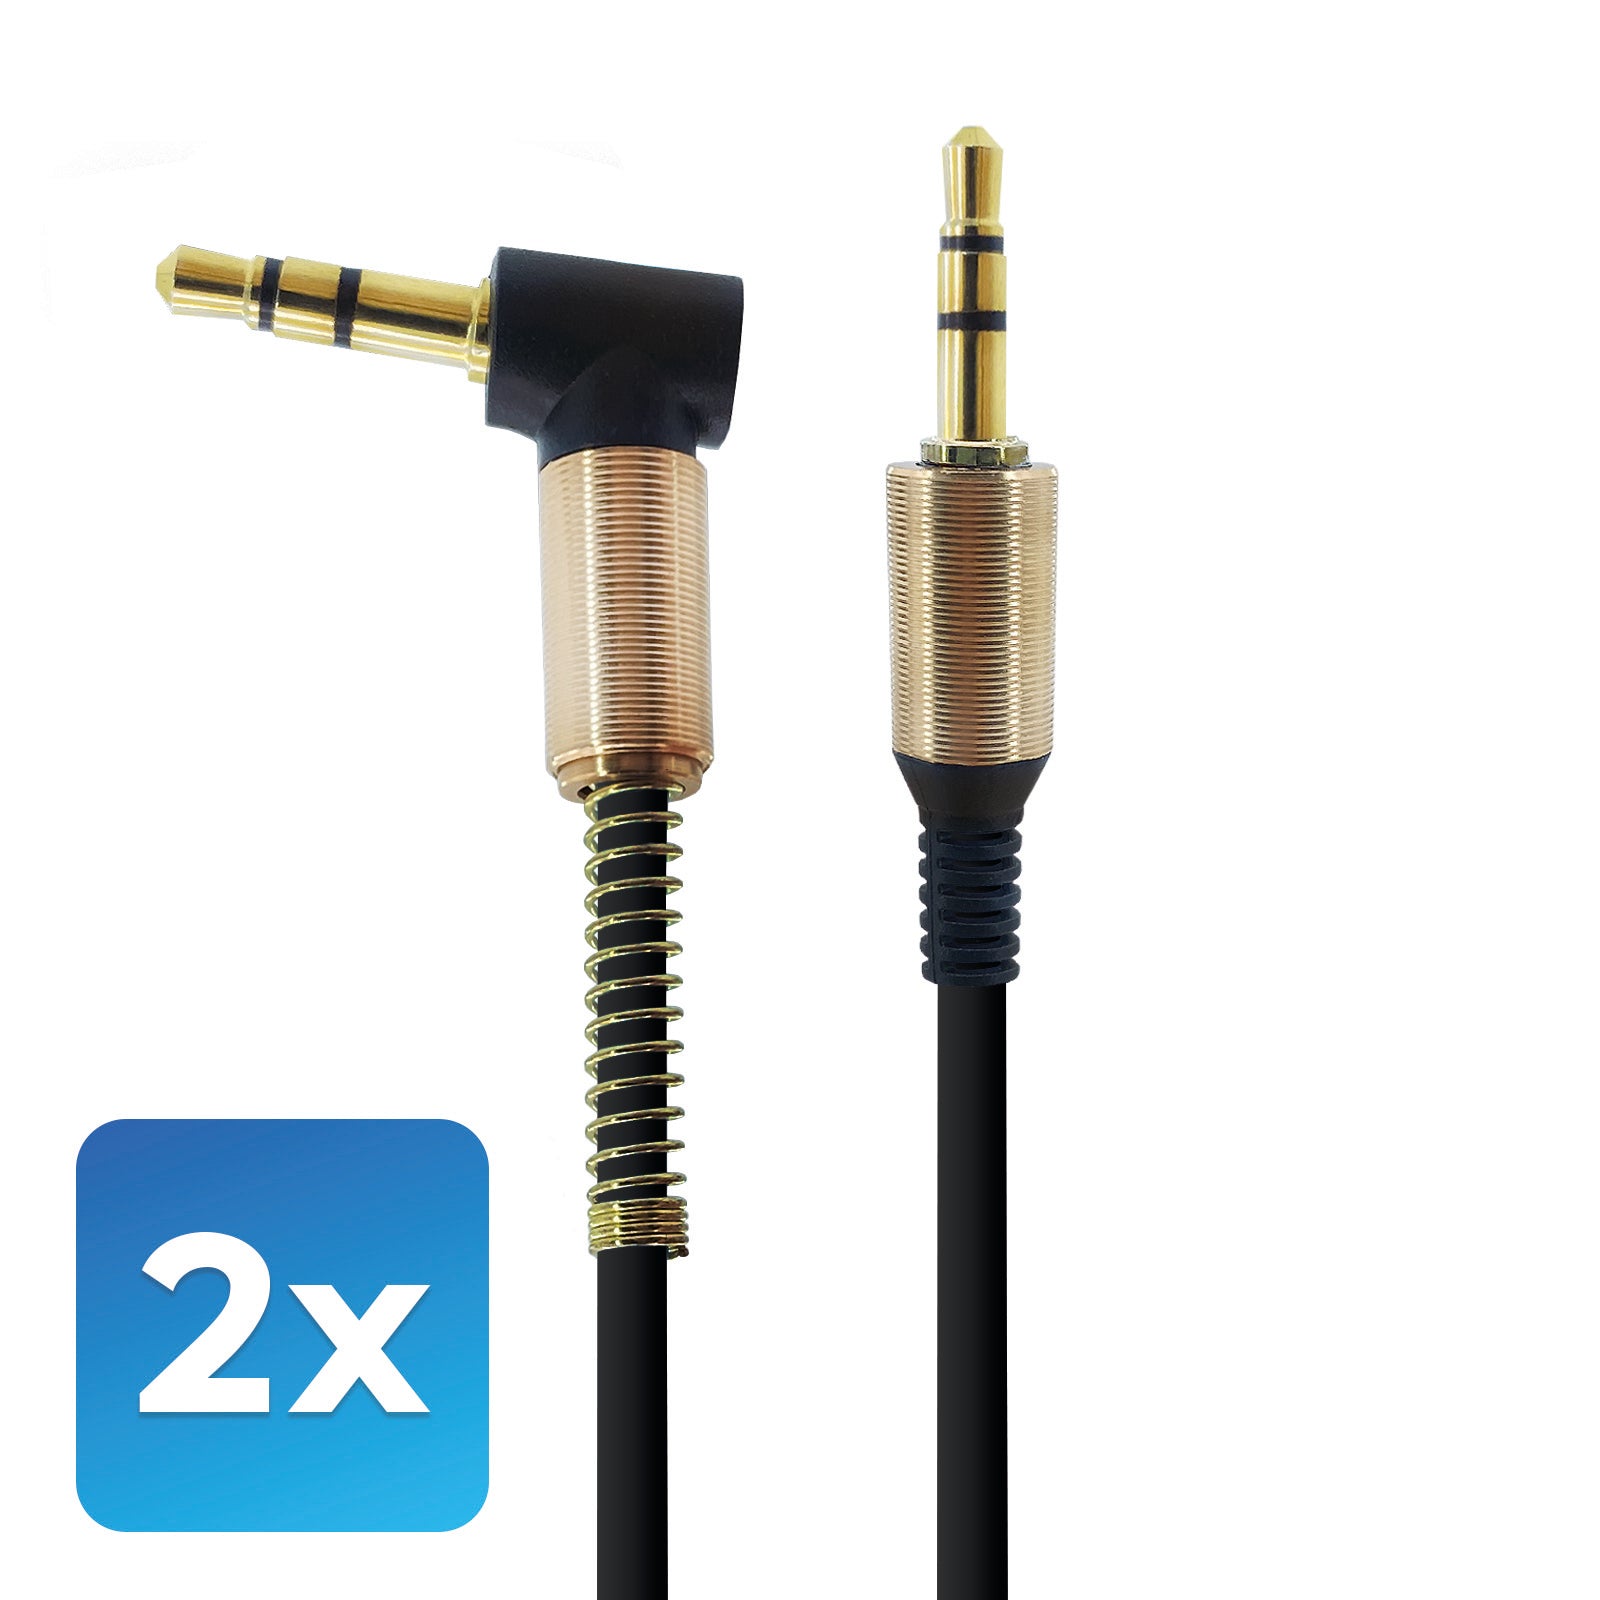 Audio-Adapter 3,5mm zu 3,5mm Stecker Schwarz mit 1 Meter Kabellänge. Stereo Audio-Adapter optimal für, Verstärker, Musikbox, AUX- Audioeingang im Auto